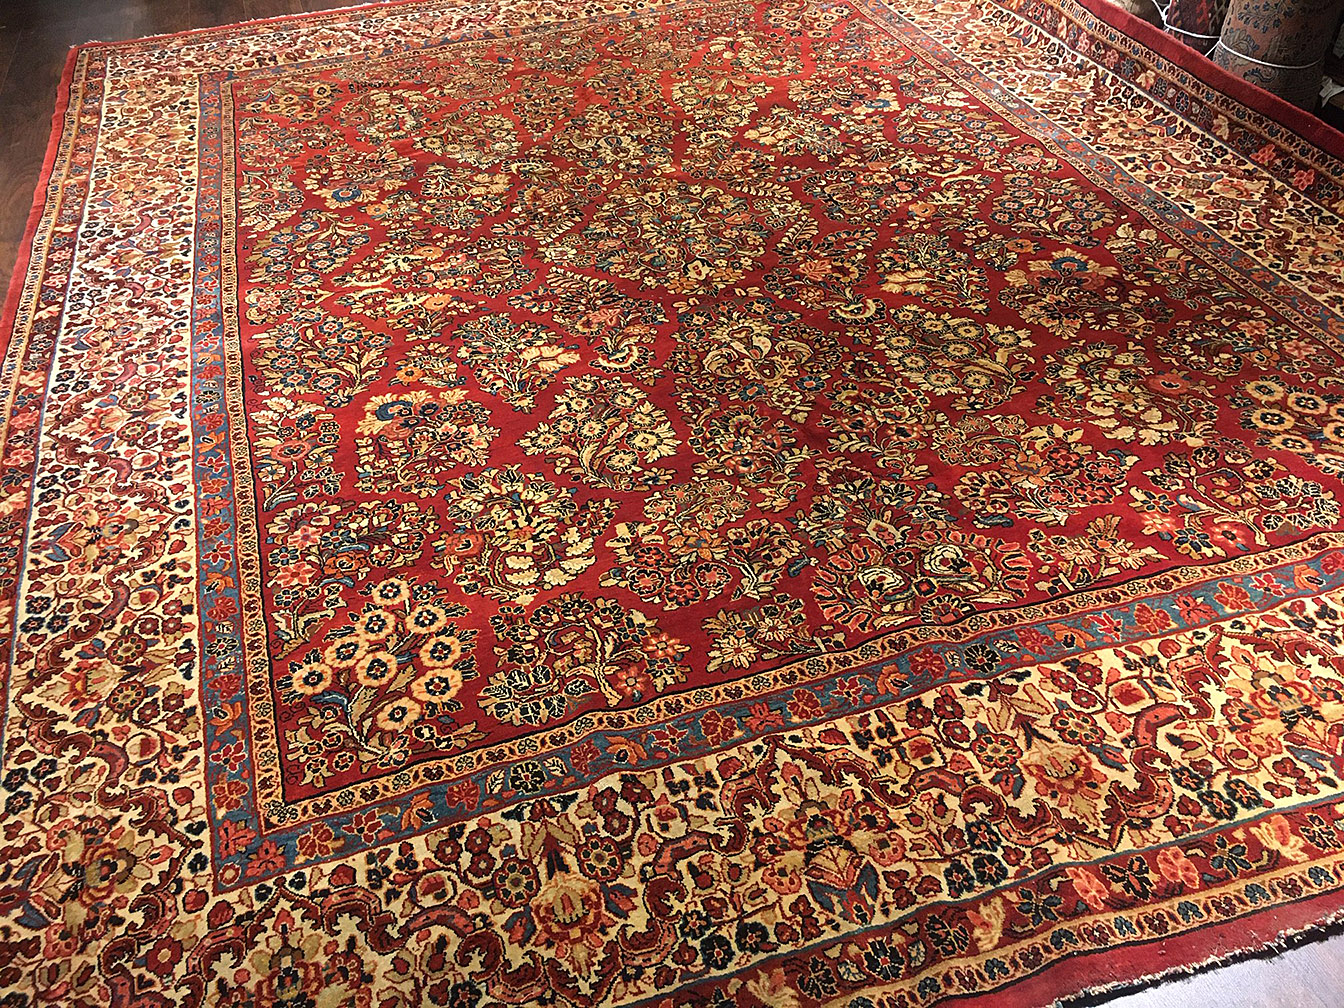 Vintage sarouk Carpet - # 54694